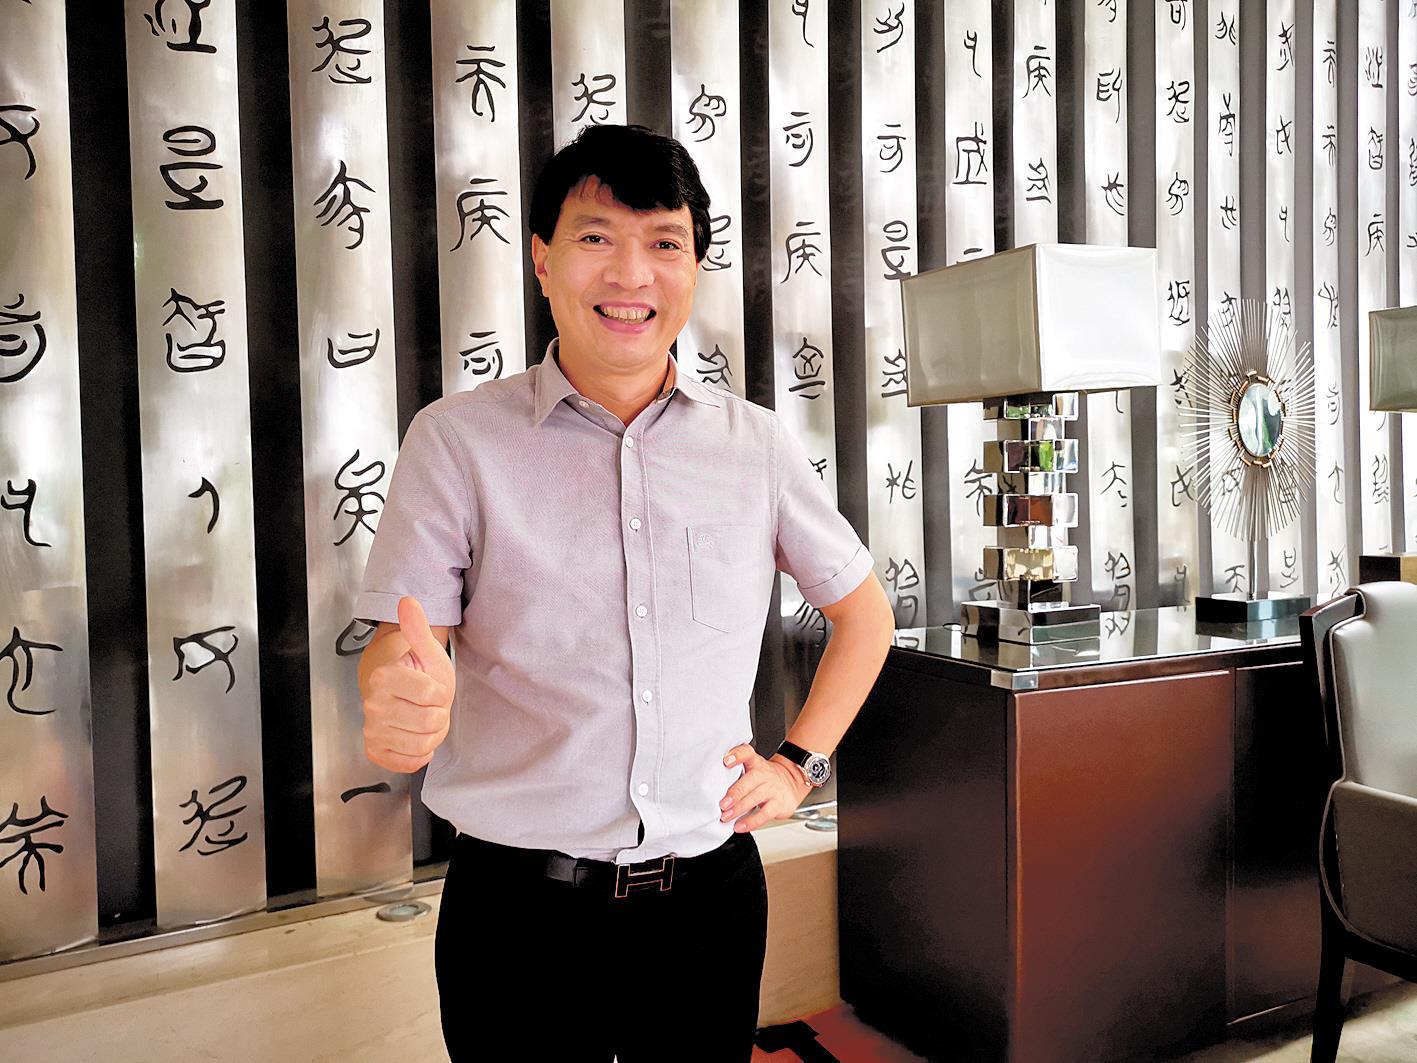 重庆市工商联副主席徐登权——一张照片彰显武汉的生机与活力